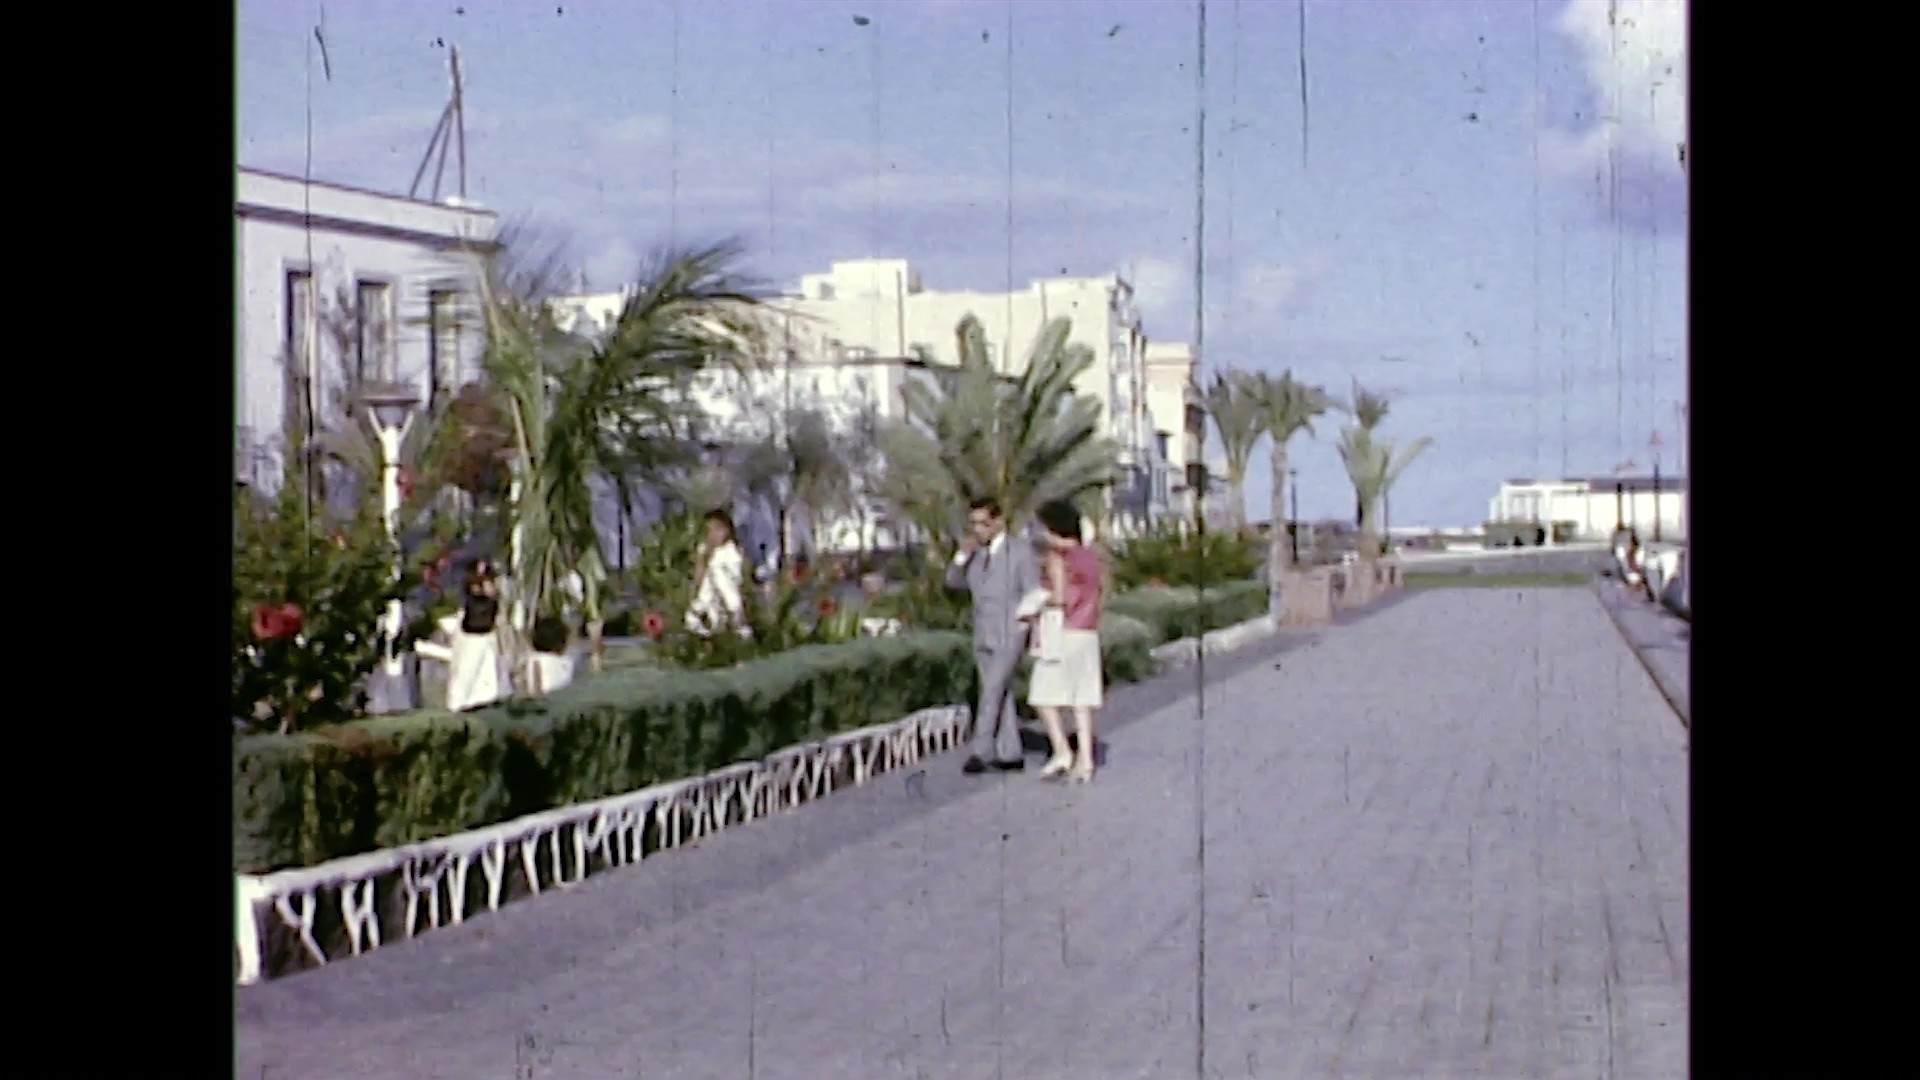 Paseos por el Parque José Ramírez Cerdá (c. 1970)